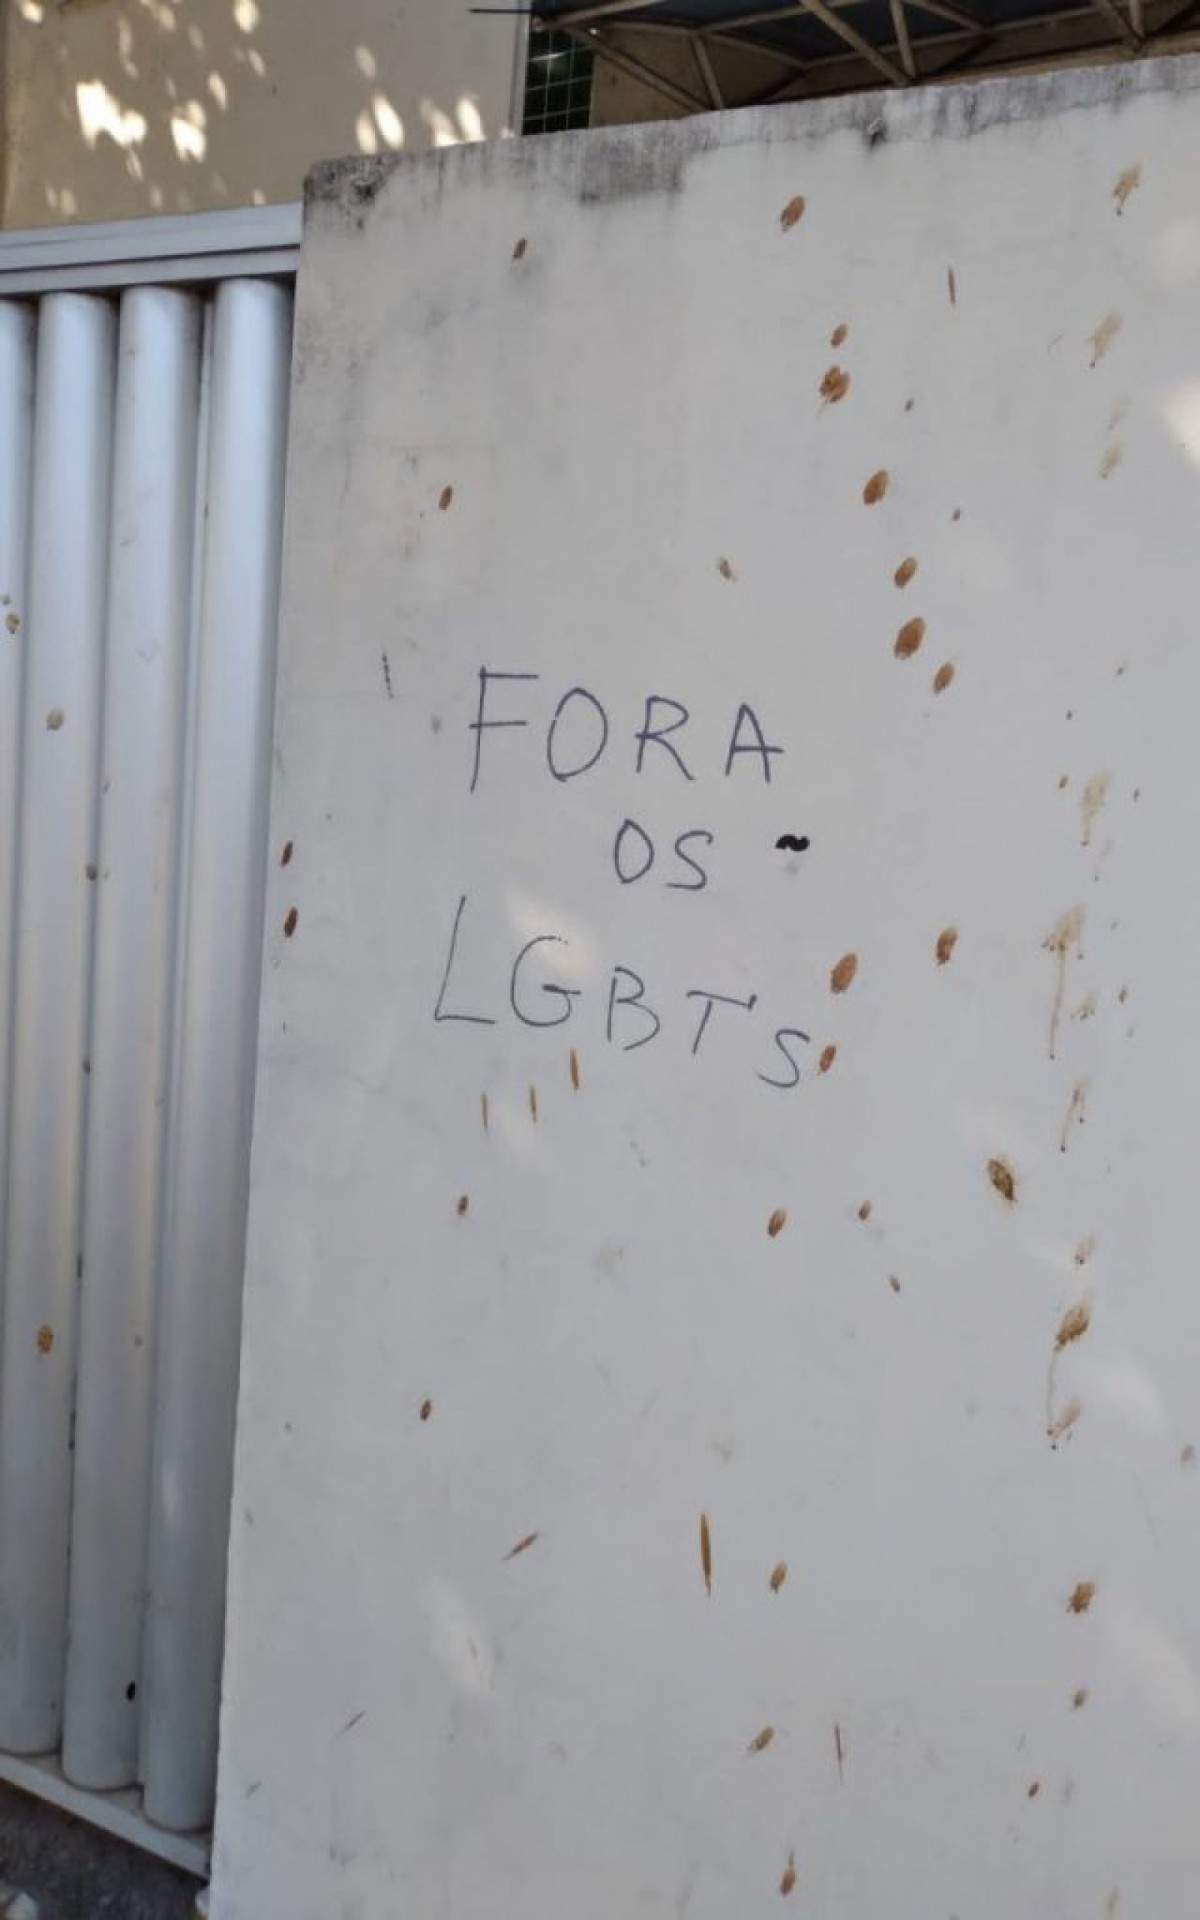 Centro de Cabo Frio é vandalizado com pichações homofóbicas - Sabrina Sá (RC24h)